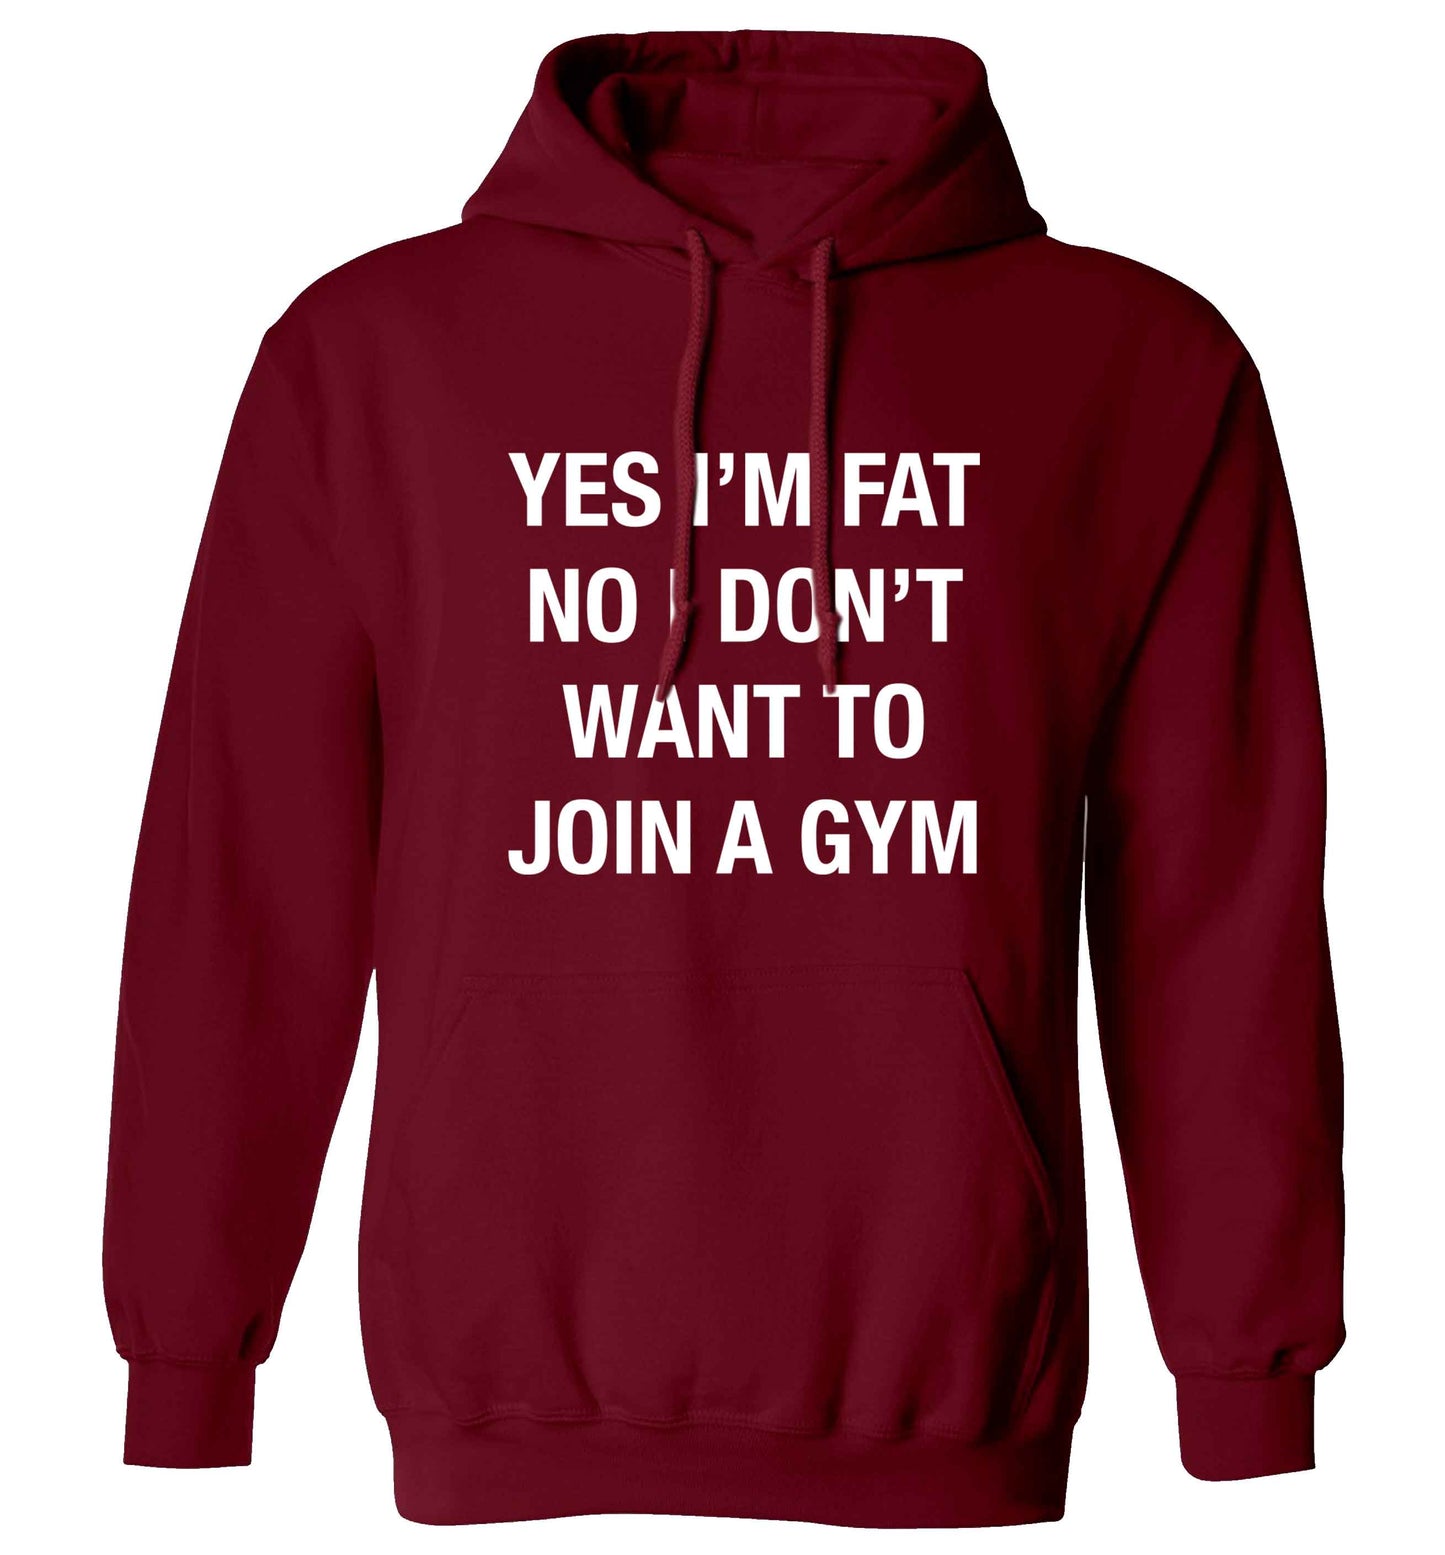 Yes I'm fat, no I don't want to go to the gym adults unisex maroon hoodie 2XL